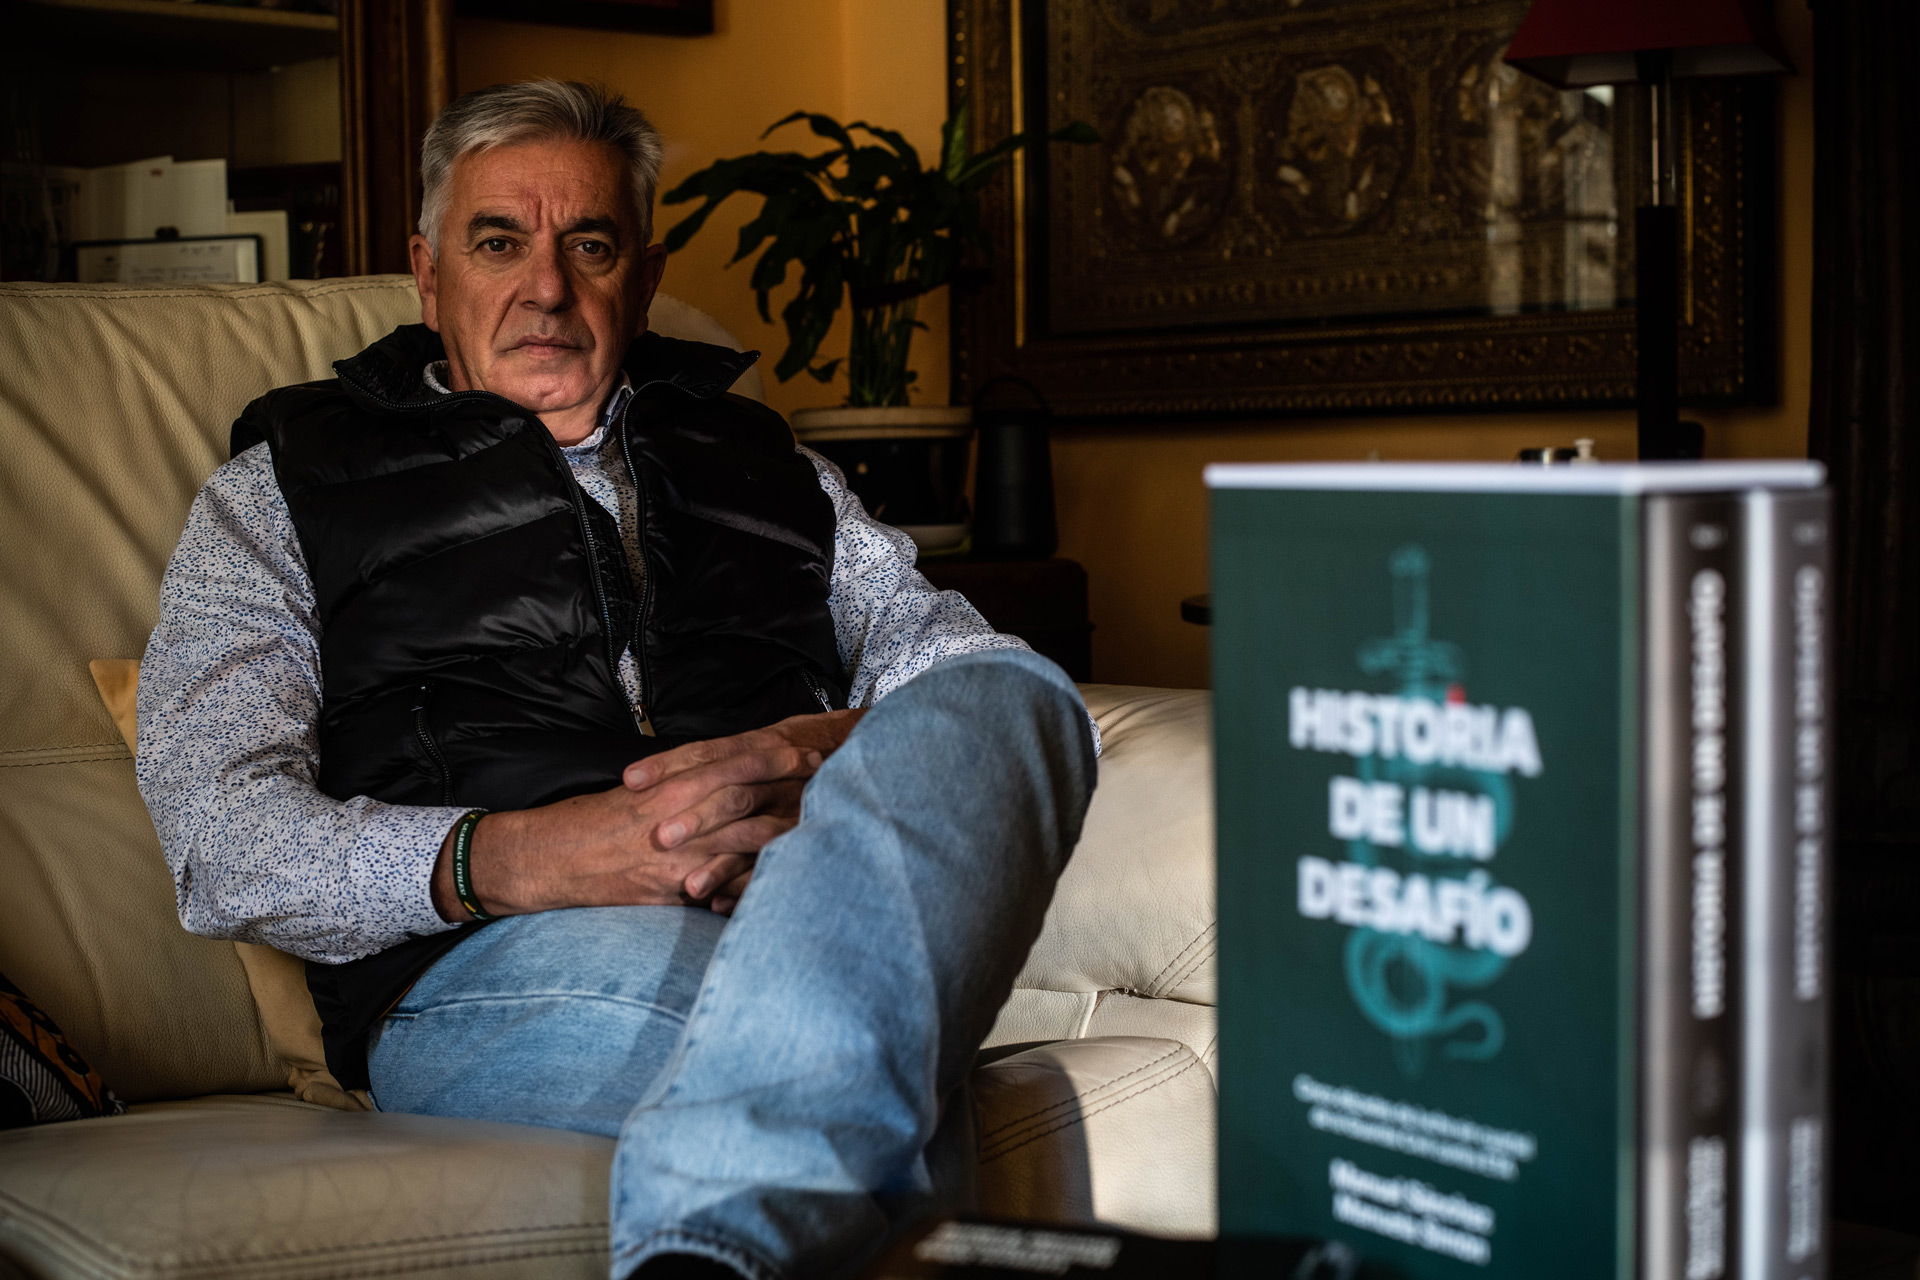 Manuel Corbí, coautor junto con Manuela Simón del libro ‘Historia de un desafío’